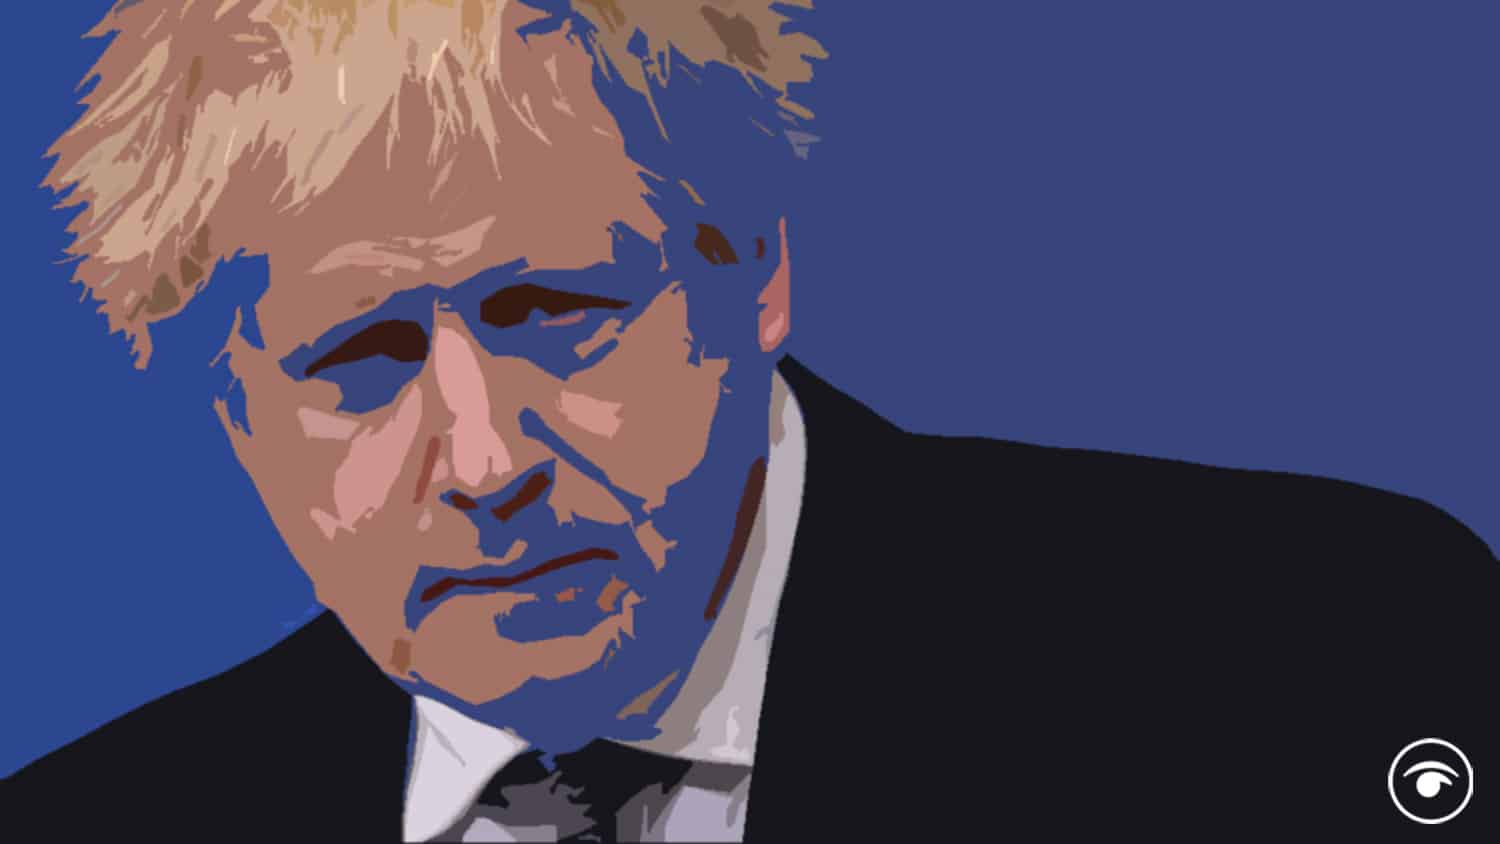 Boris Johnson embodies a global crisis in leadership